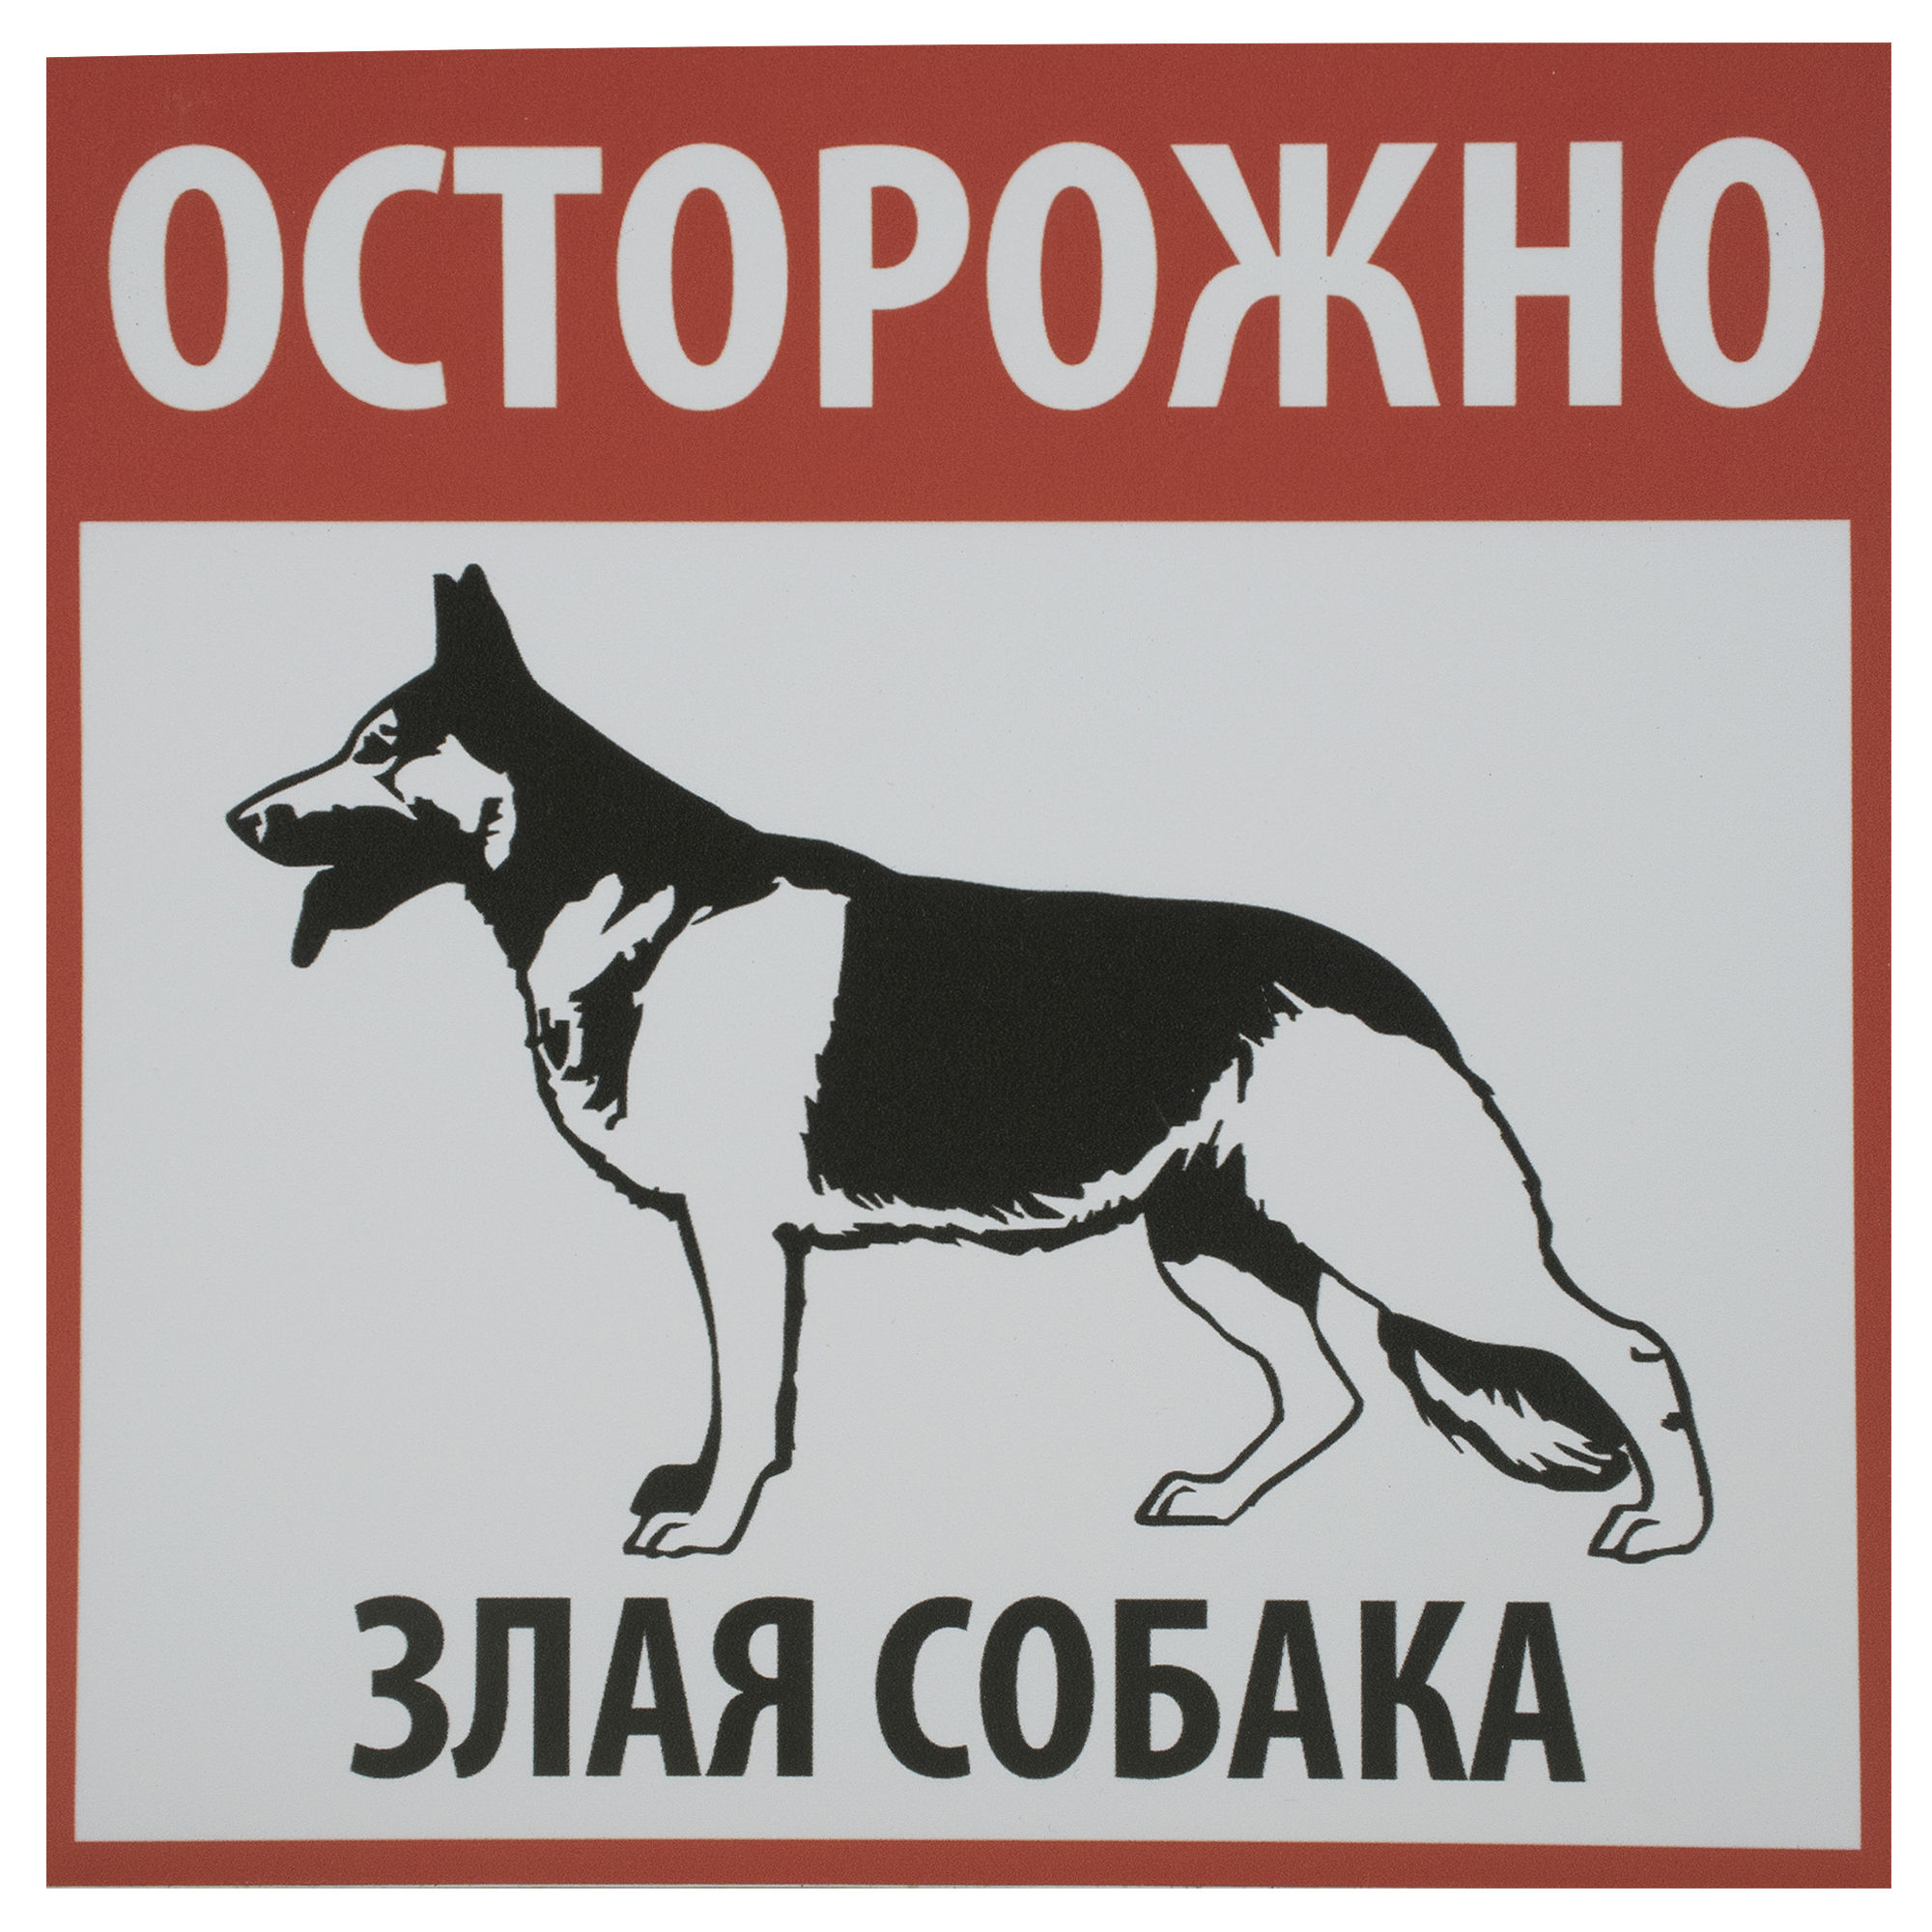 Таблички «Осторожно злая собака»